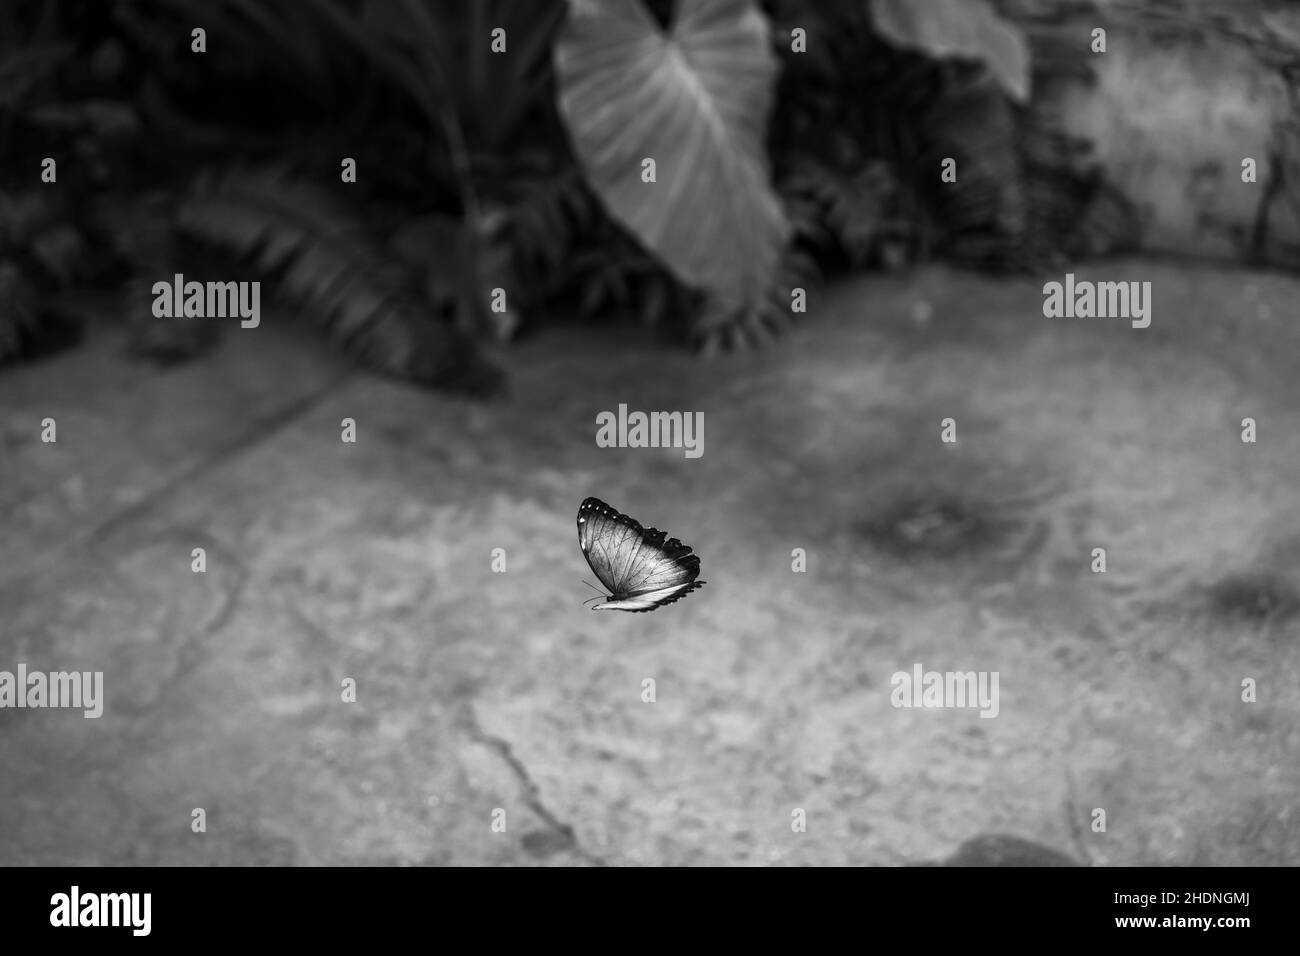 Scatto in scala di grigi di una farfalla volante Foto Stock